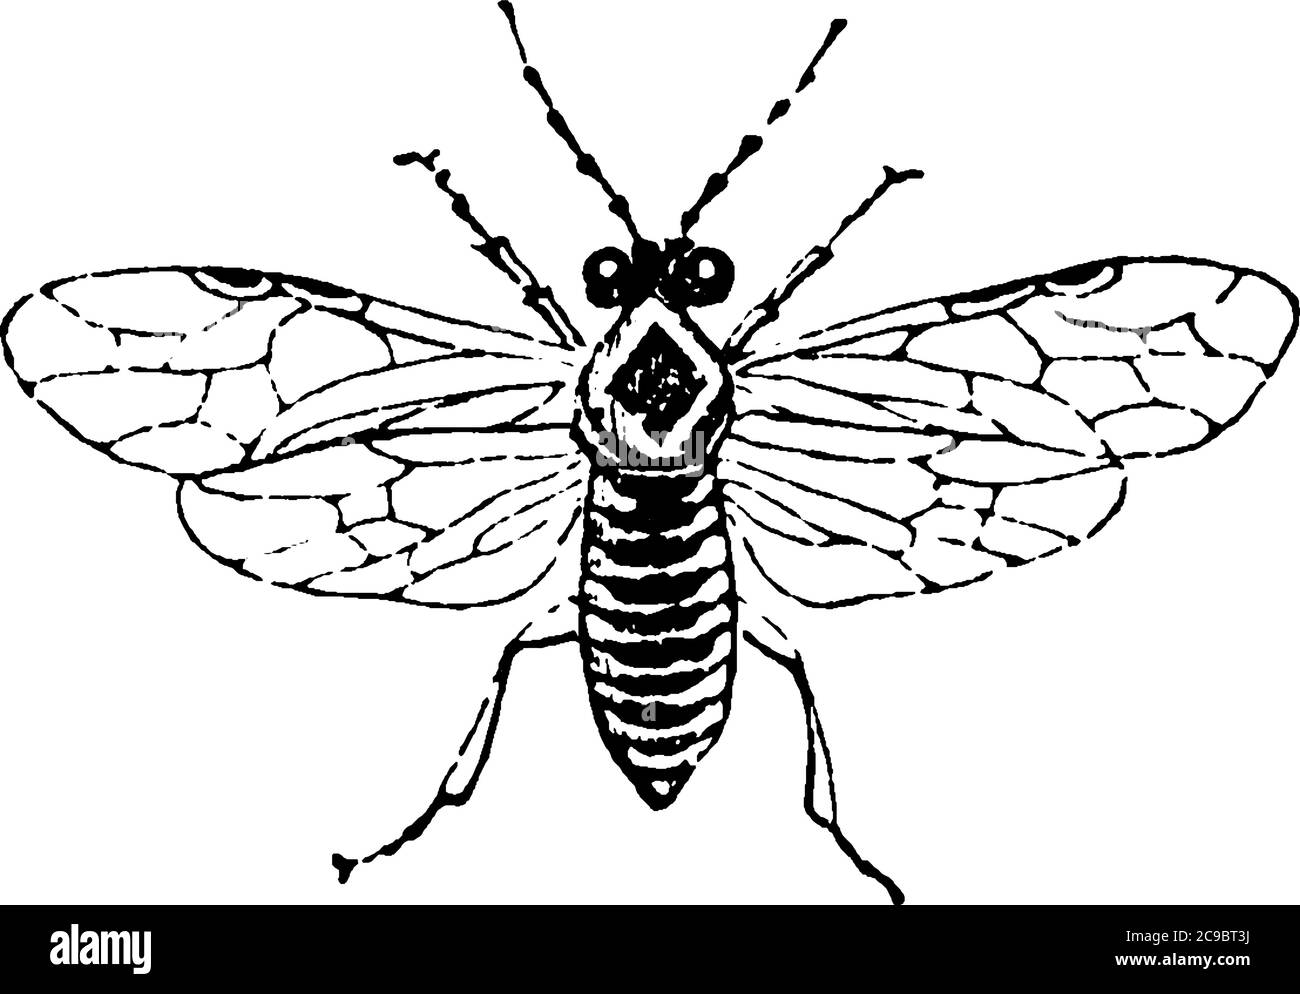 Sägefliegen sind die Insekten der Unterordnung Symphyta innerhalb der Ordnung Hymenoptera neben Ameisen, Bienen und Wespen, Vintage-Linienzeichnung oder Gravur illus Stock Vektor